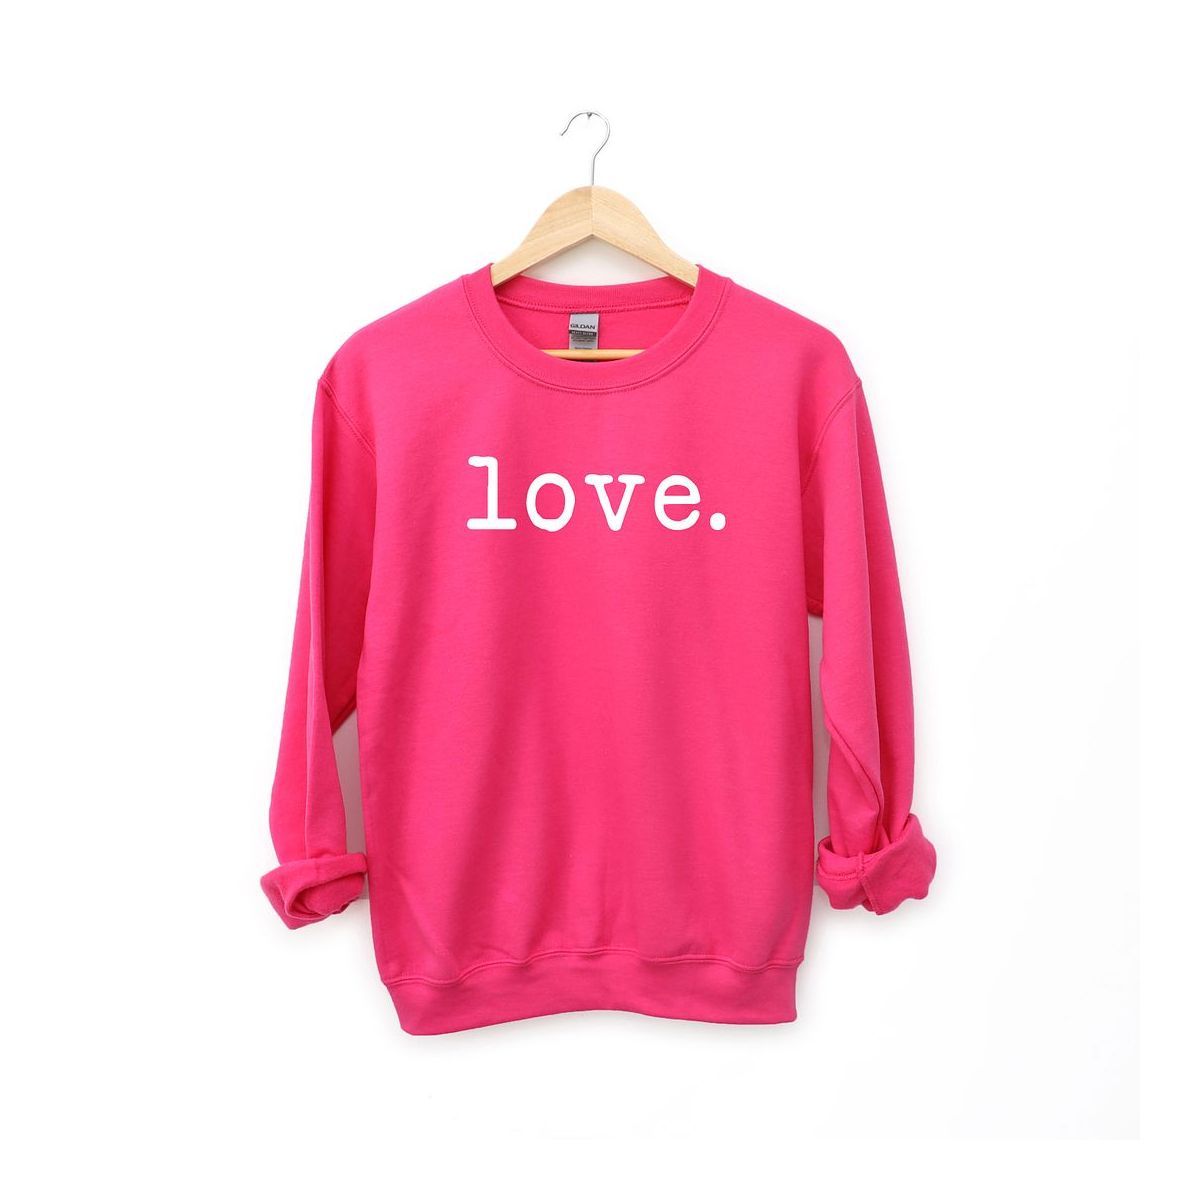 Simply Sage Market Women's Graphic Sweatshirt Love Typewriter | Target